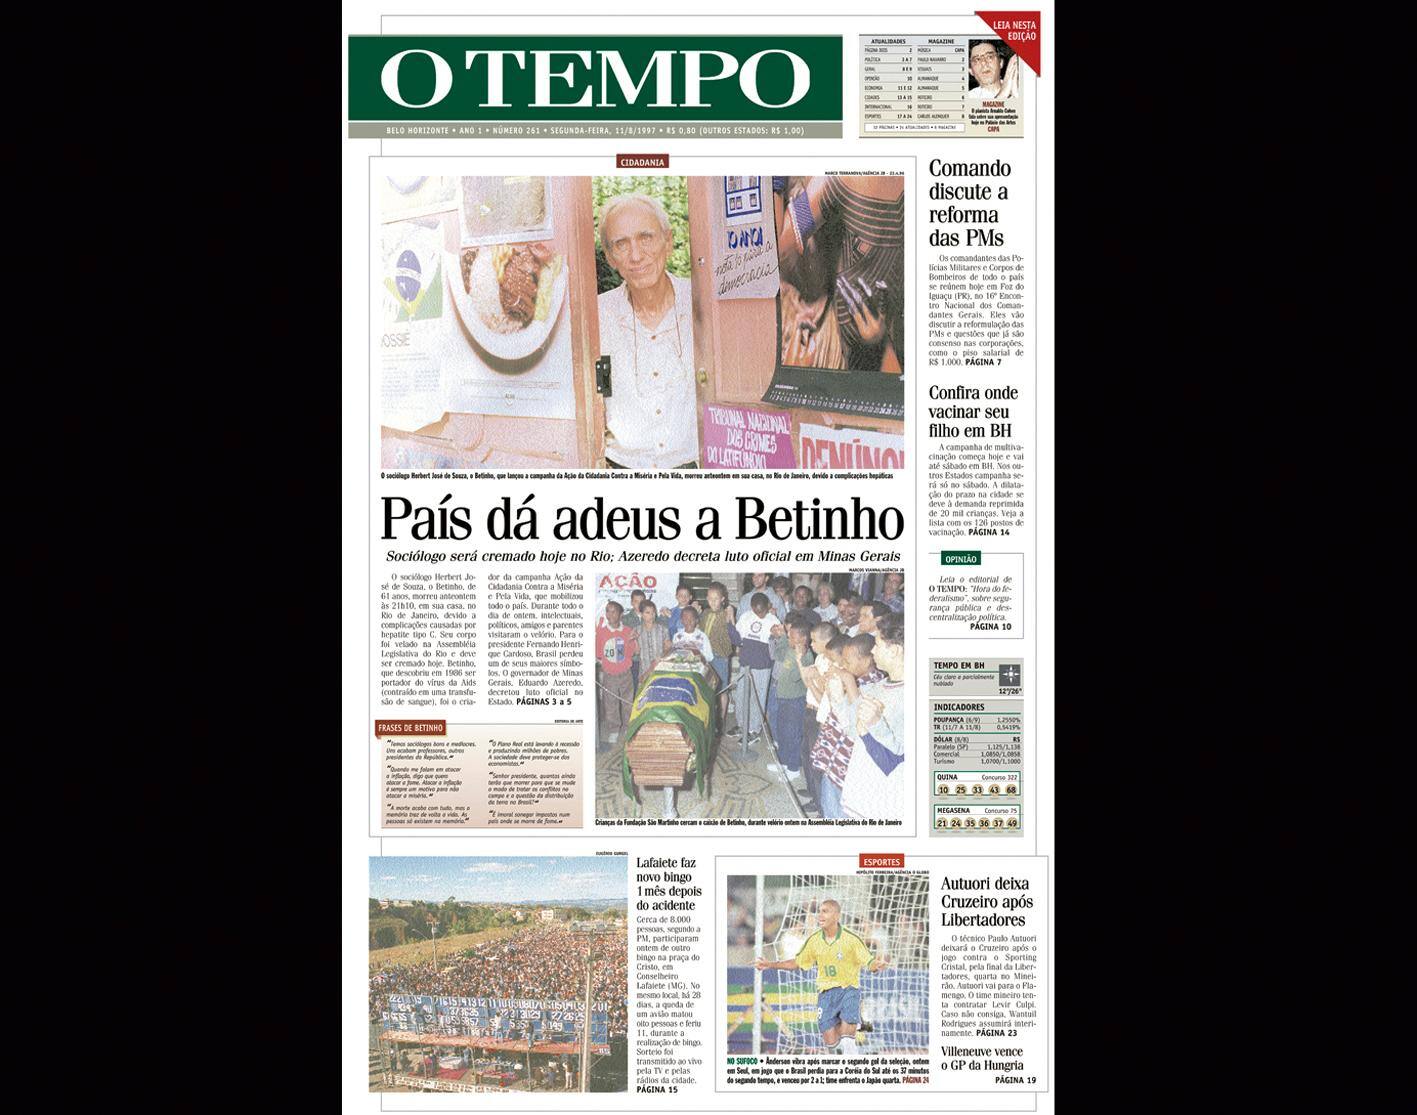 Capa do jornal O TEMPO no dia 11.8.1997; resgate do acervo marca as comemorações dos 25 anos da publicação